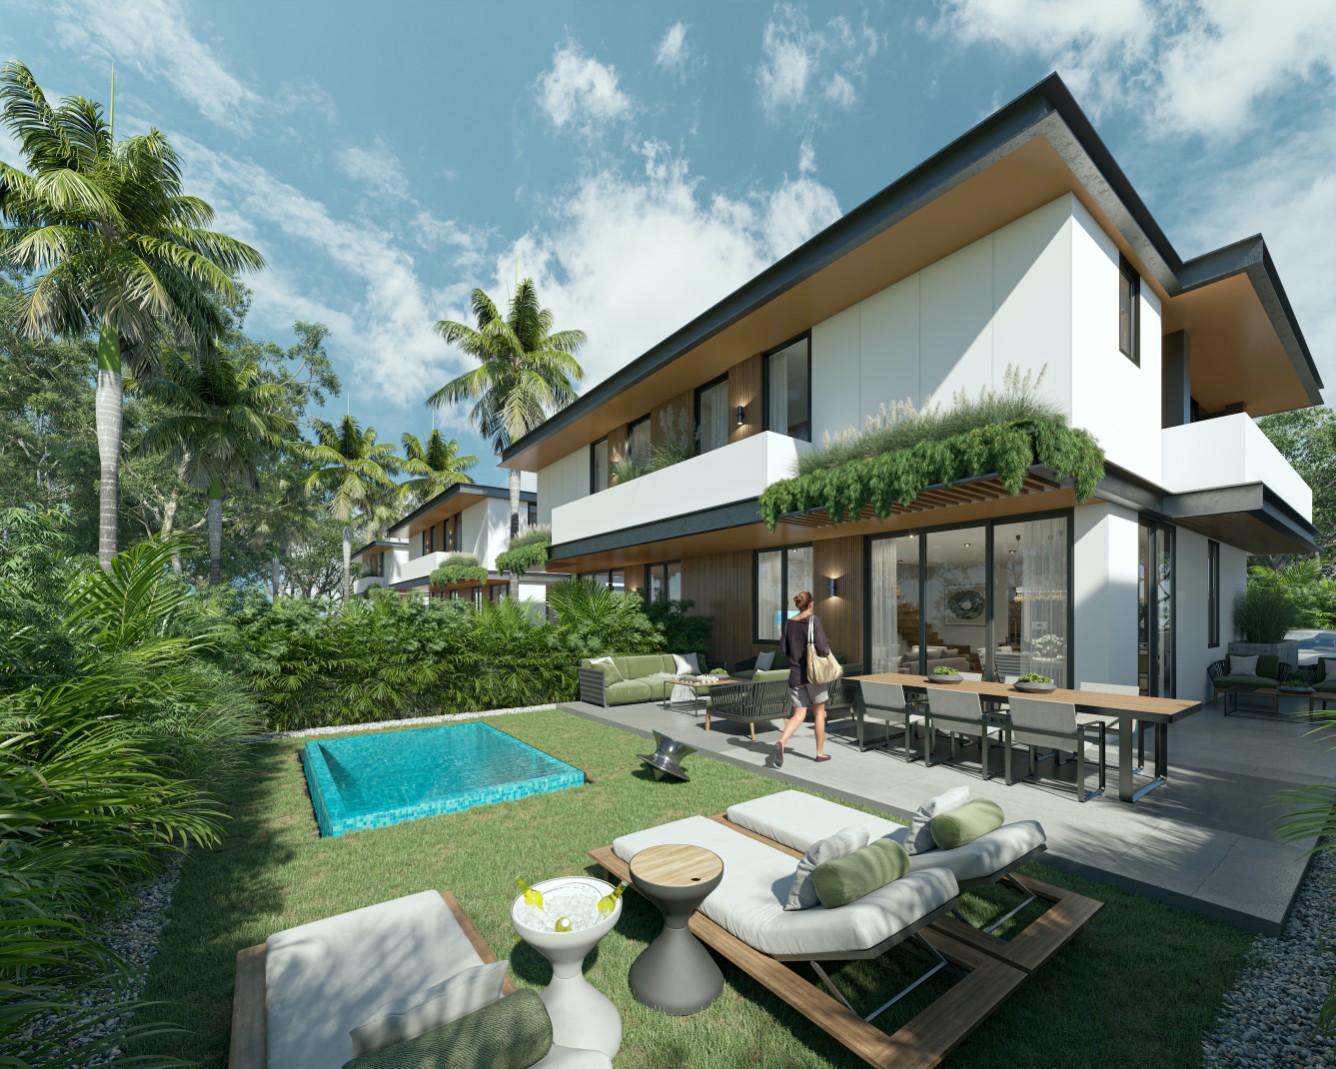 Villas en venta en Punta Cana con Campo de golf y playa artificial.